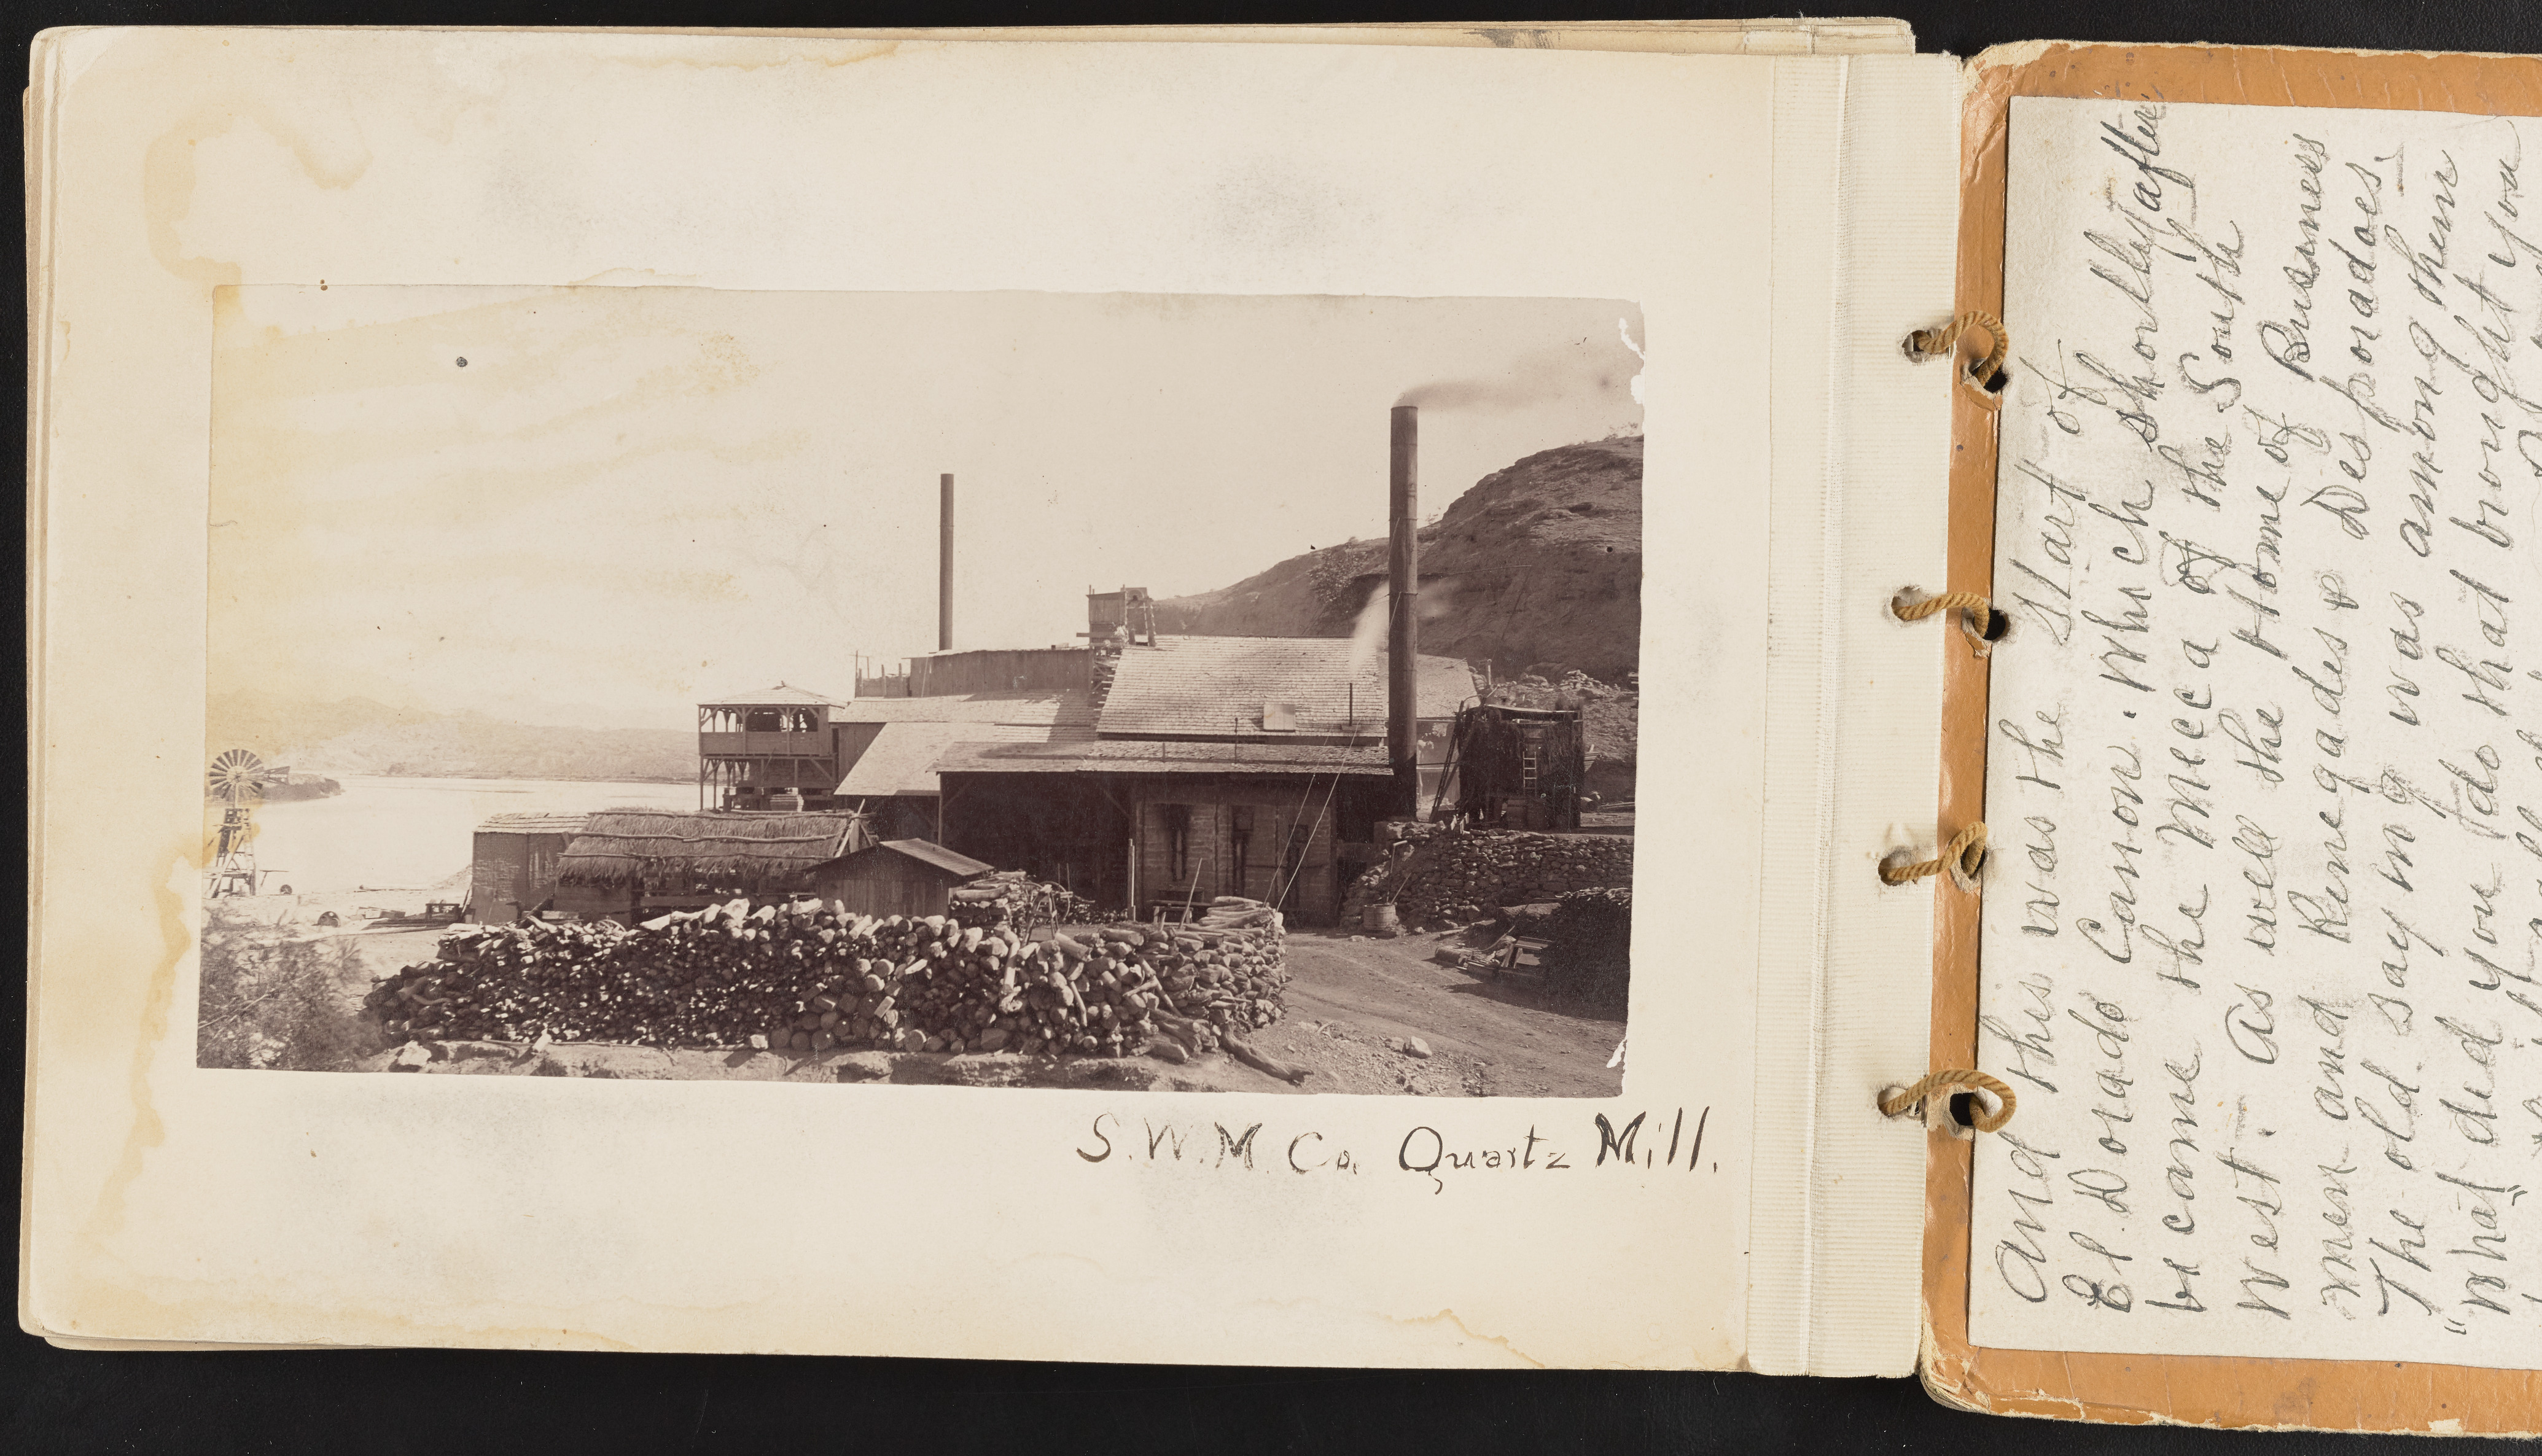 S. W. M. Co. Quartz Mill.